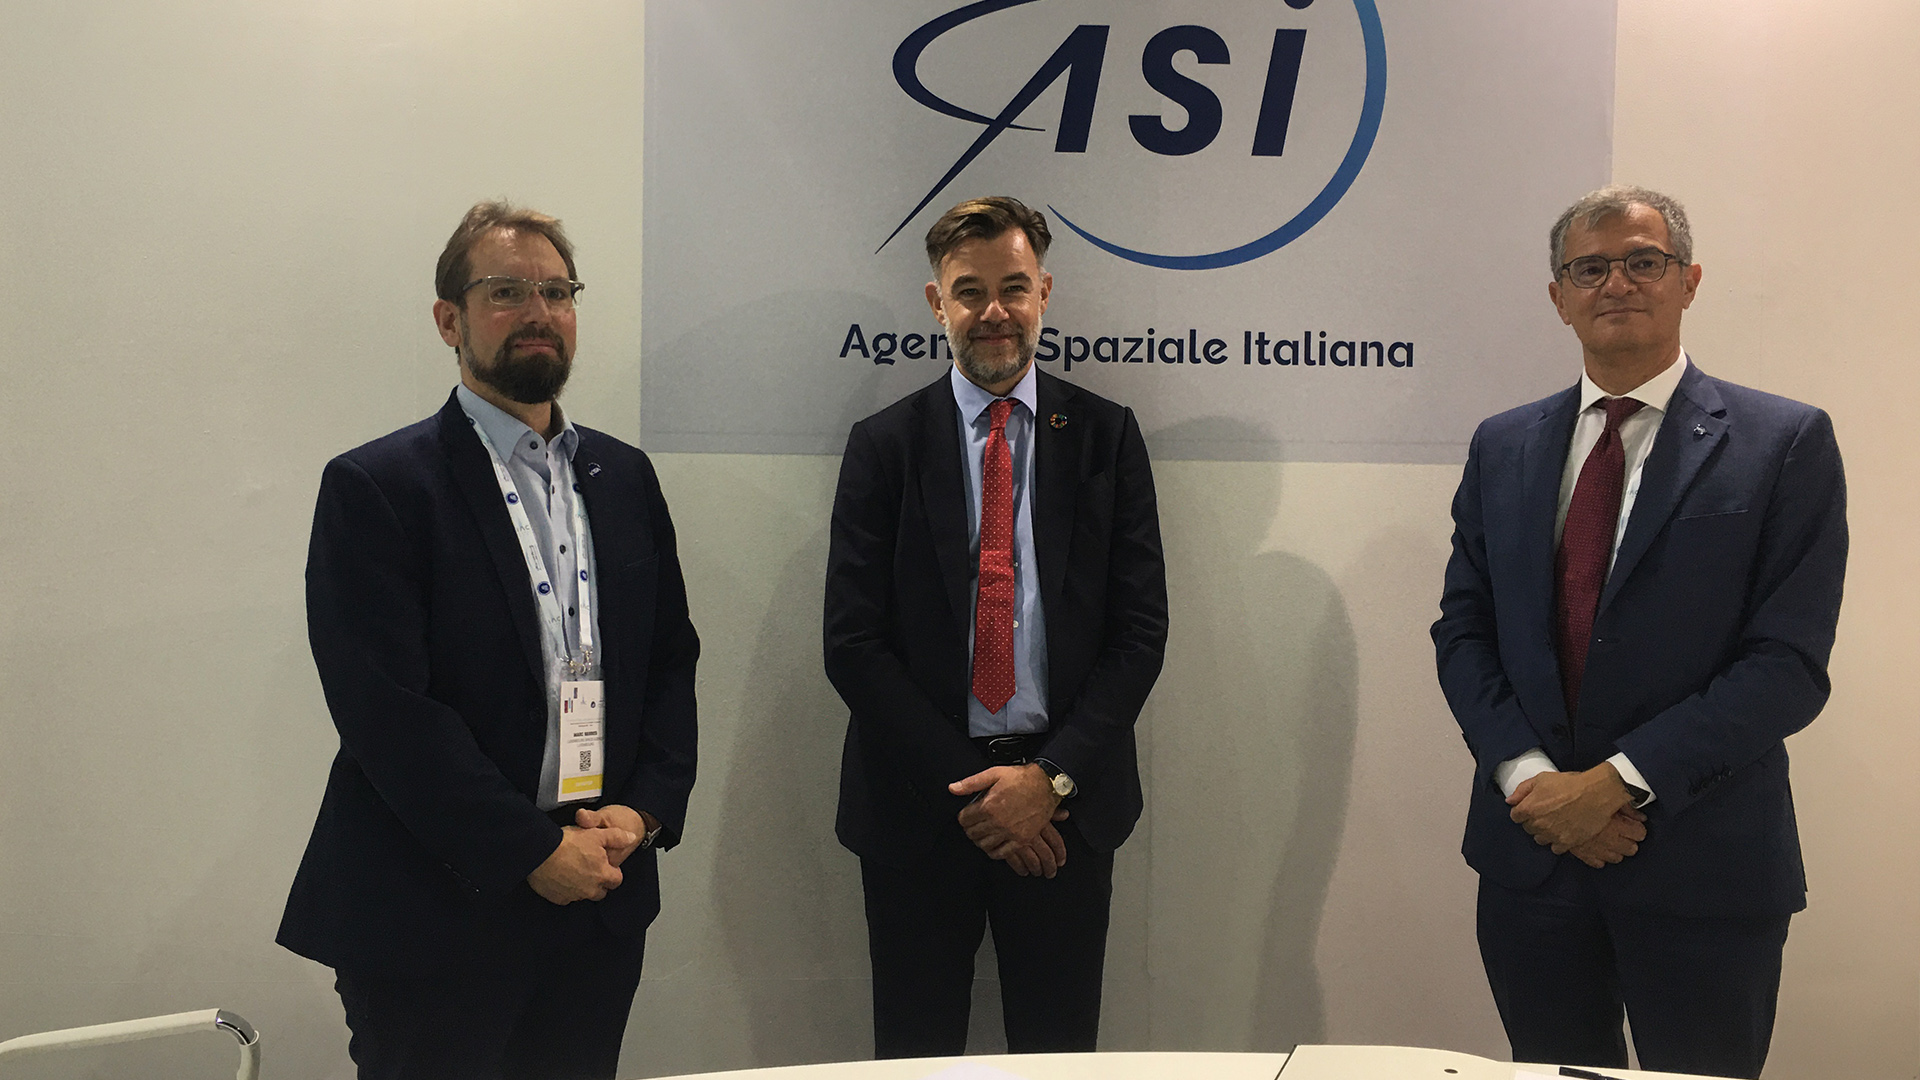 ASI - Italia e Lussemburgo unite nella cooperazione spaziale